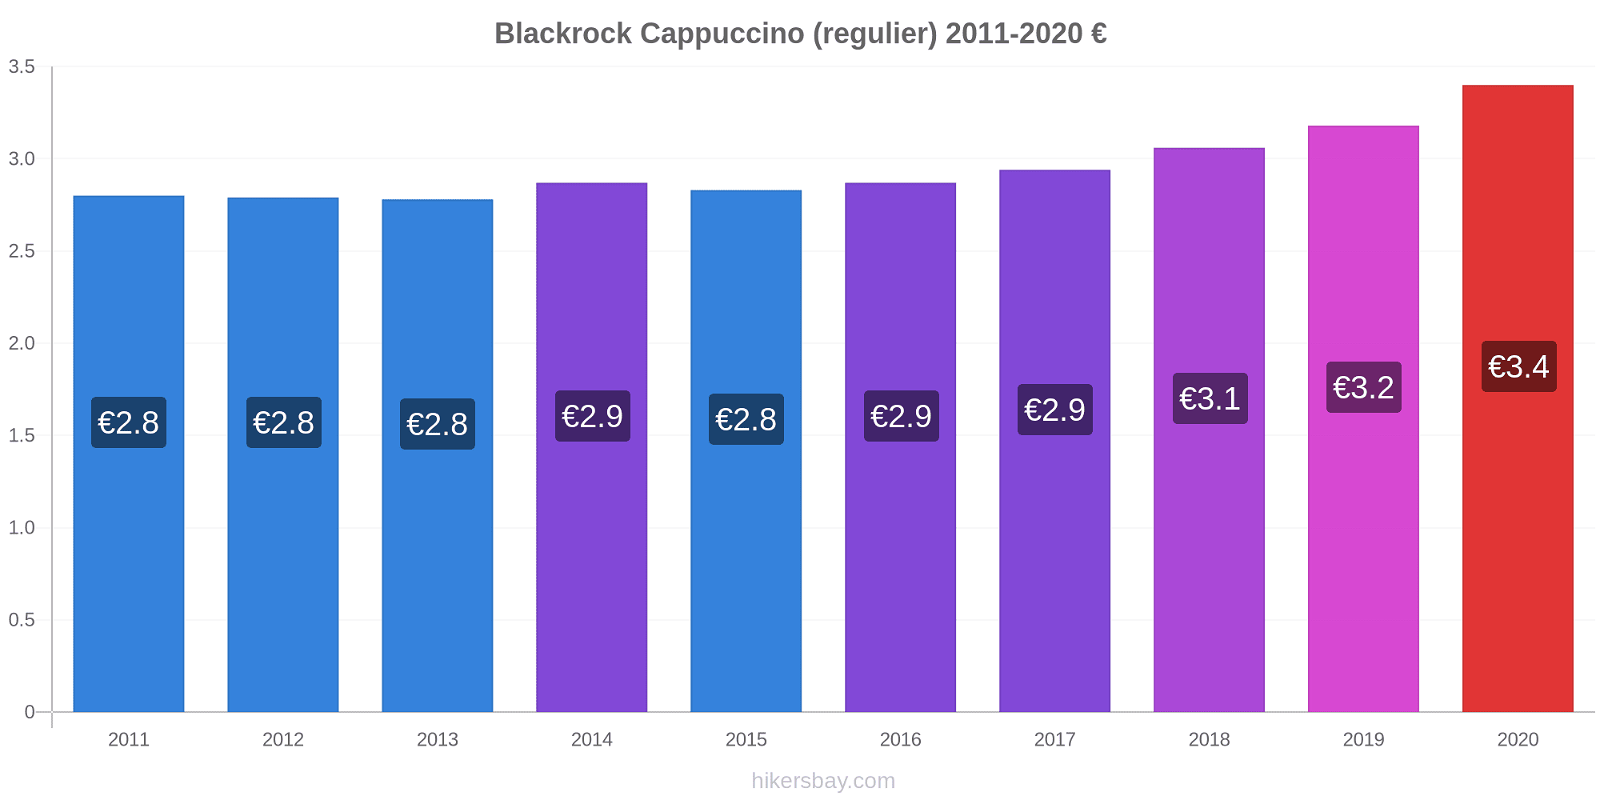 Blackrock prijswijzigingen Cappuccino (regelmatige) hikersbay.com